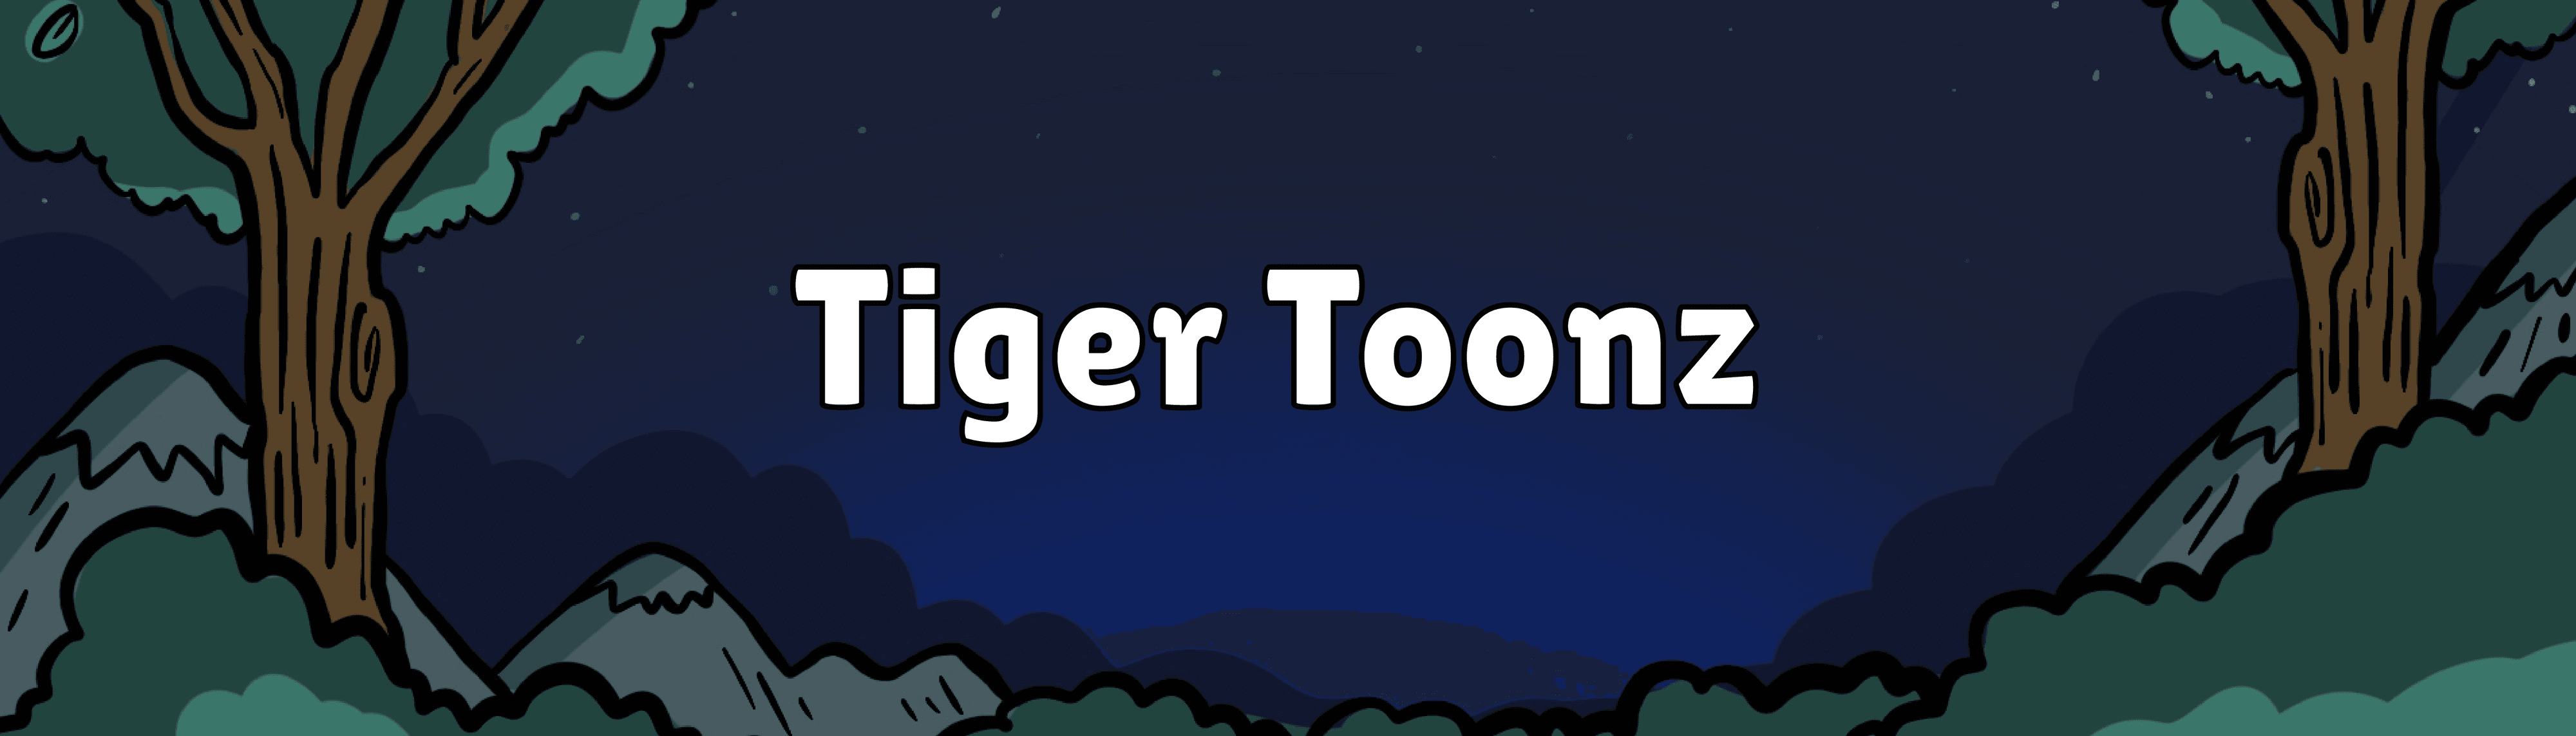 TigerToonz_Deployer banner